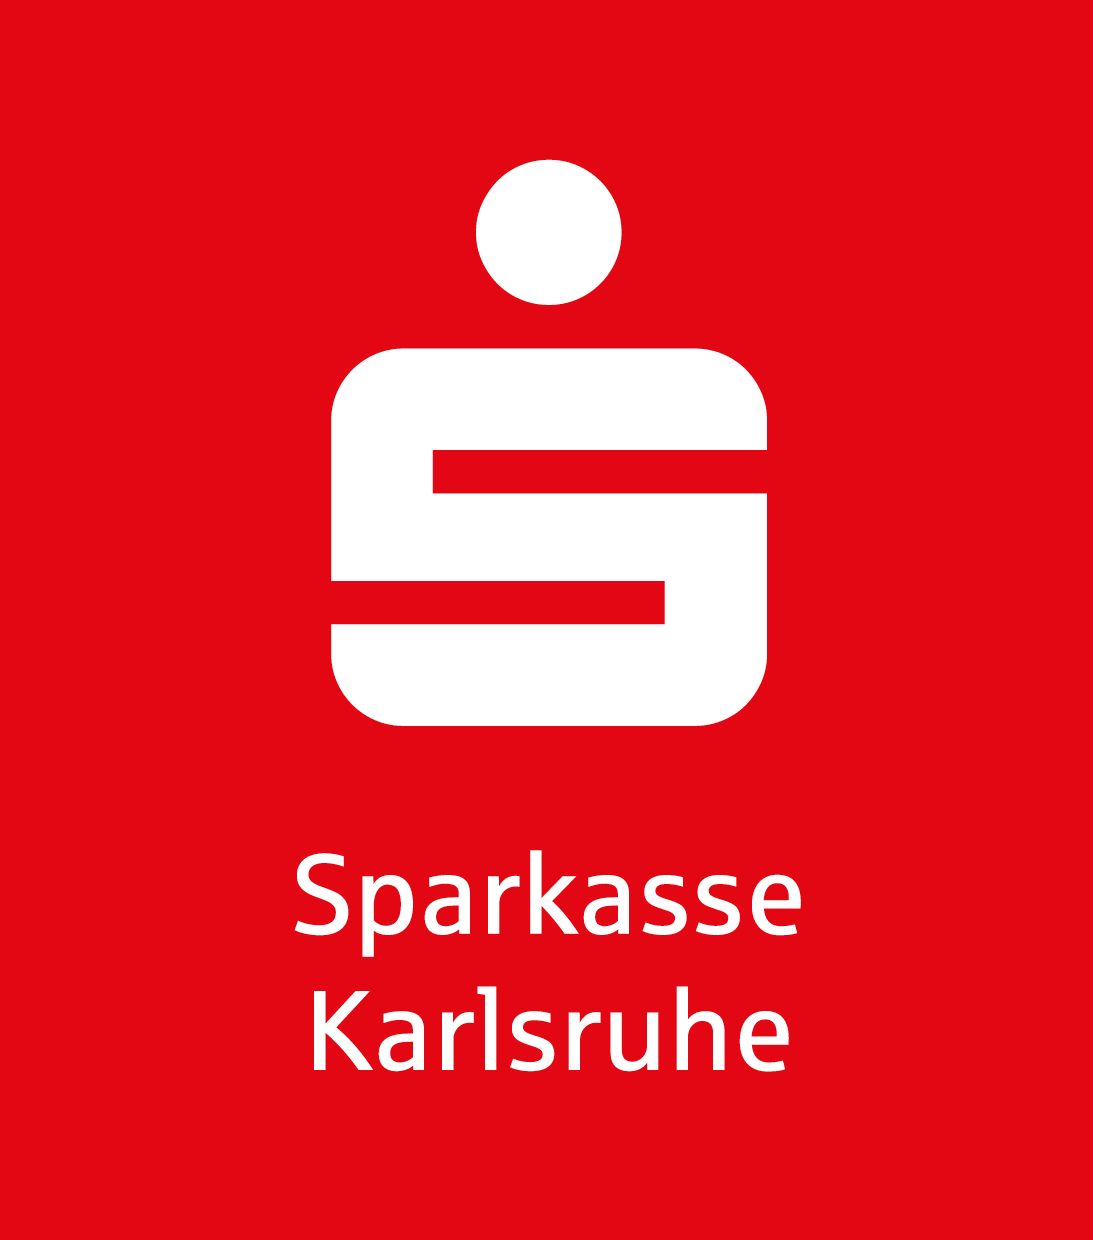 Sparkasse Karlsruhe Logo 2021 Negativ Rot.png